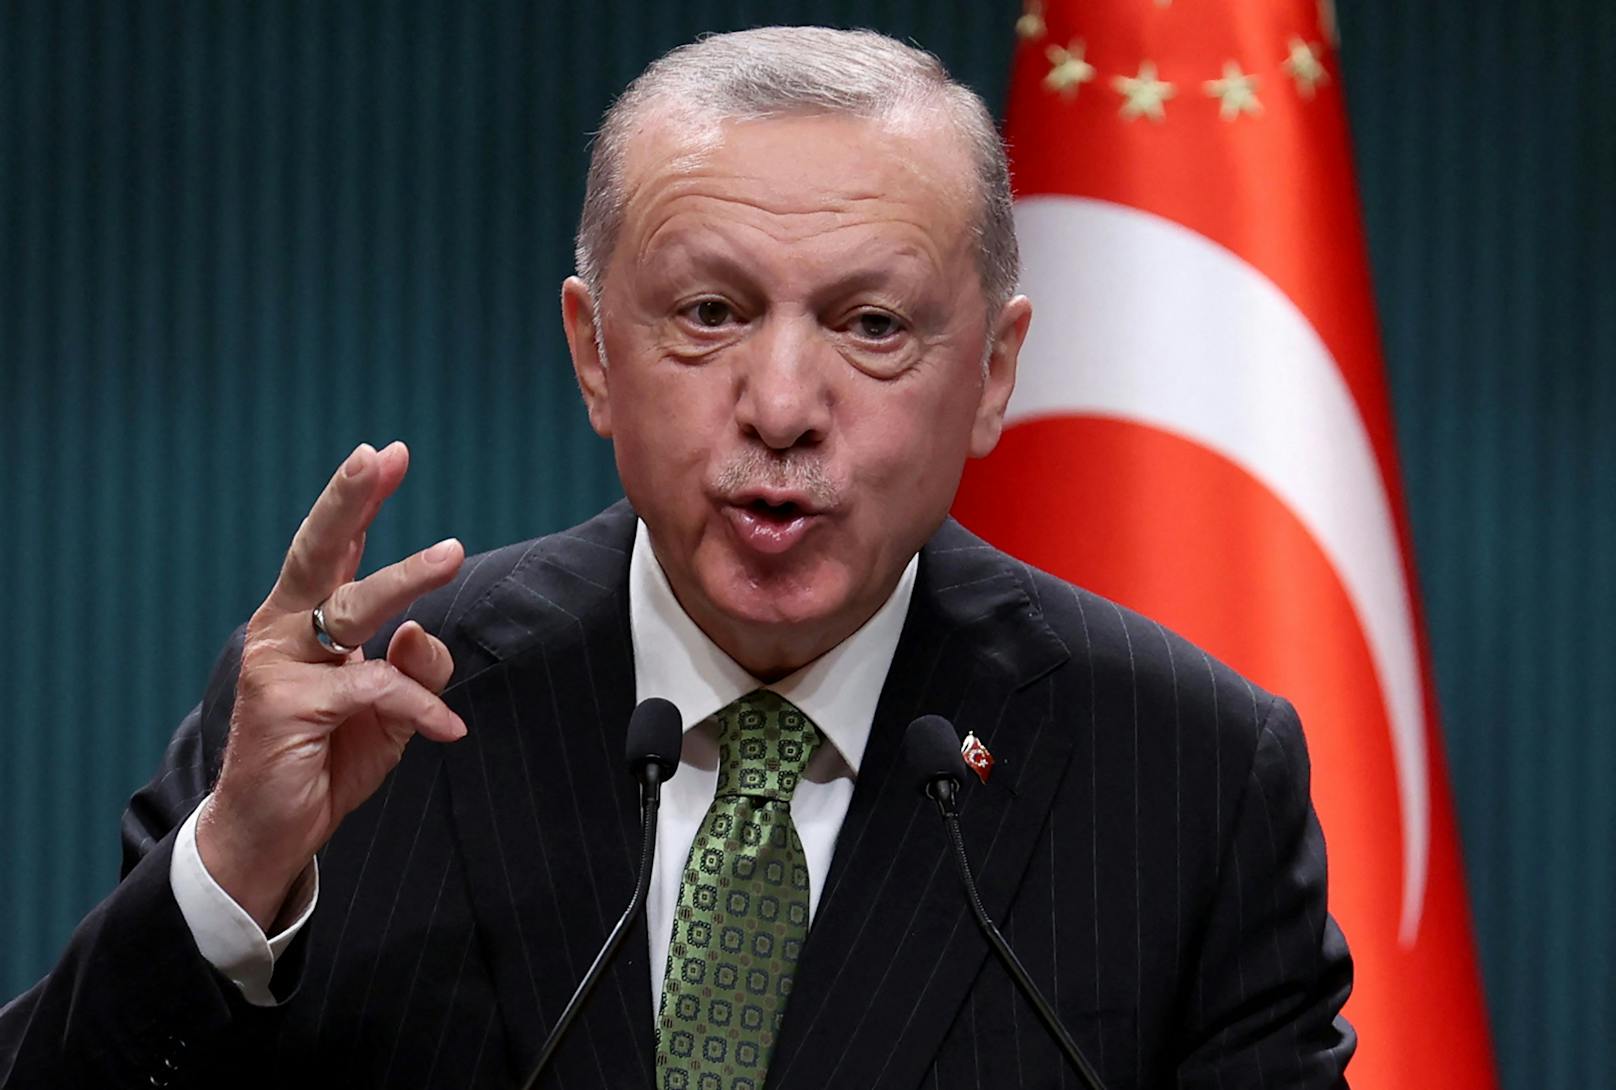 Die tödliche Explosion sei ein "niederträchtiger Anschlag" gewesen, sagte Erdogan in einer Rede.